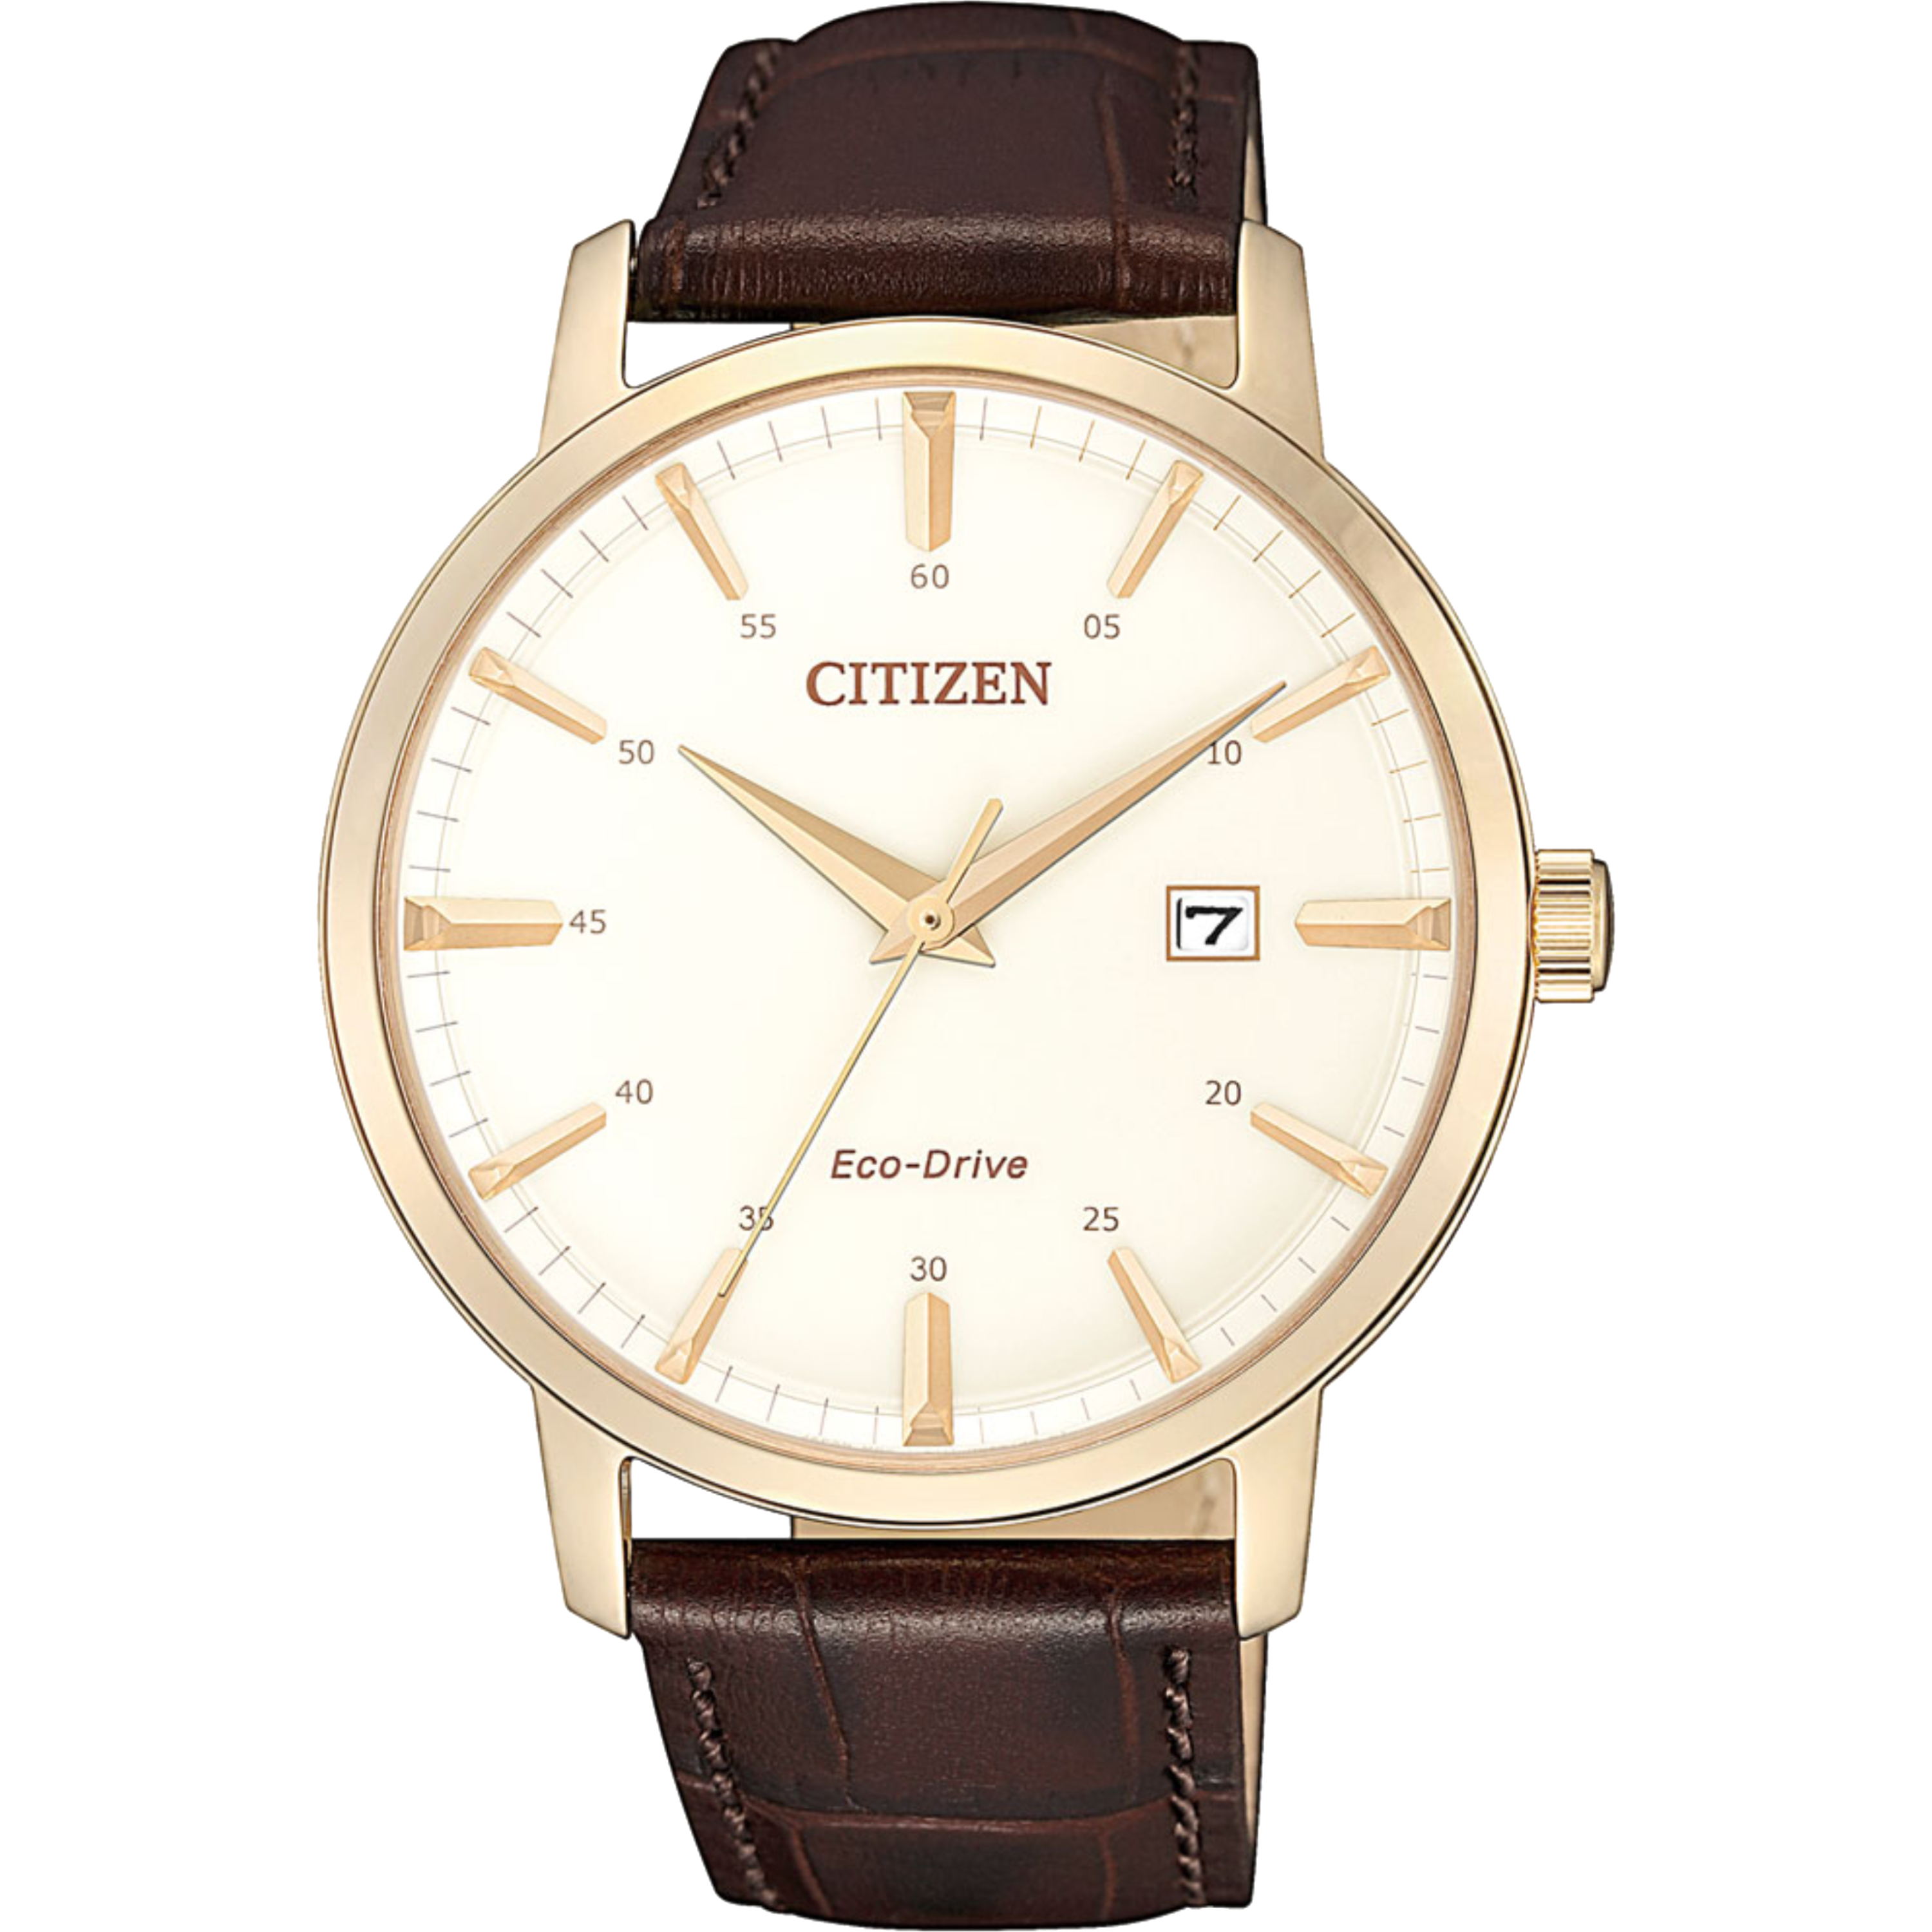 שעון יד לגבר מנגנון אקו דרייב Citizen BM7463-12A 40mm - צבע רוז גולד/עור חום אחריות לשנה ע"י היבואן